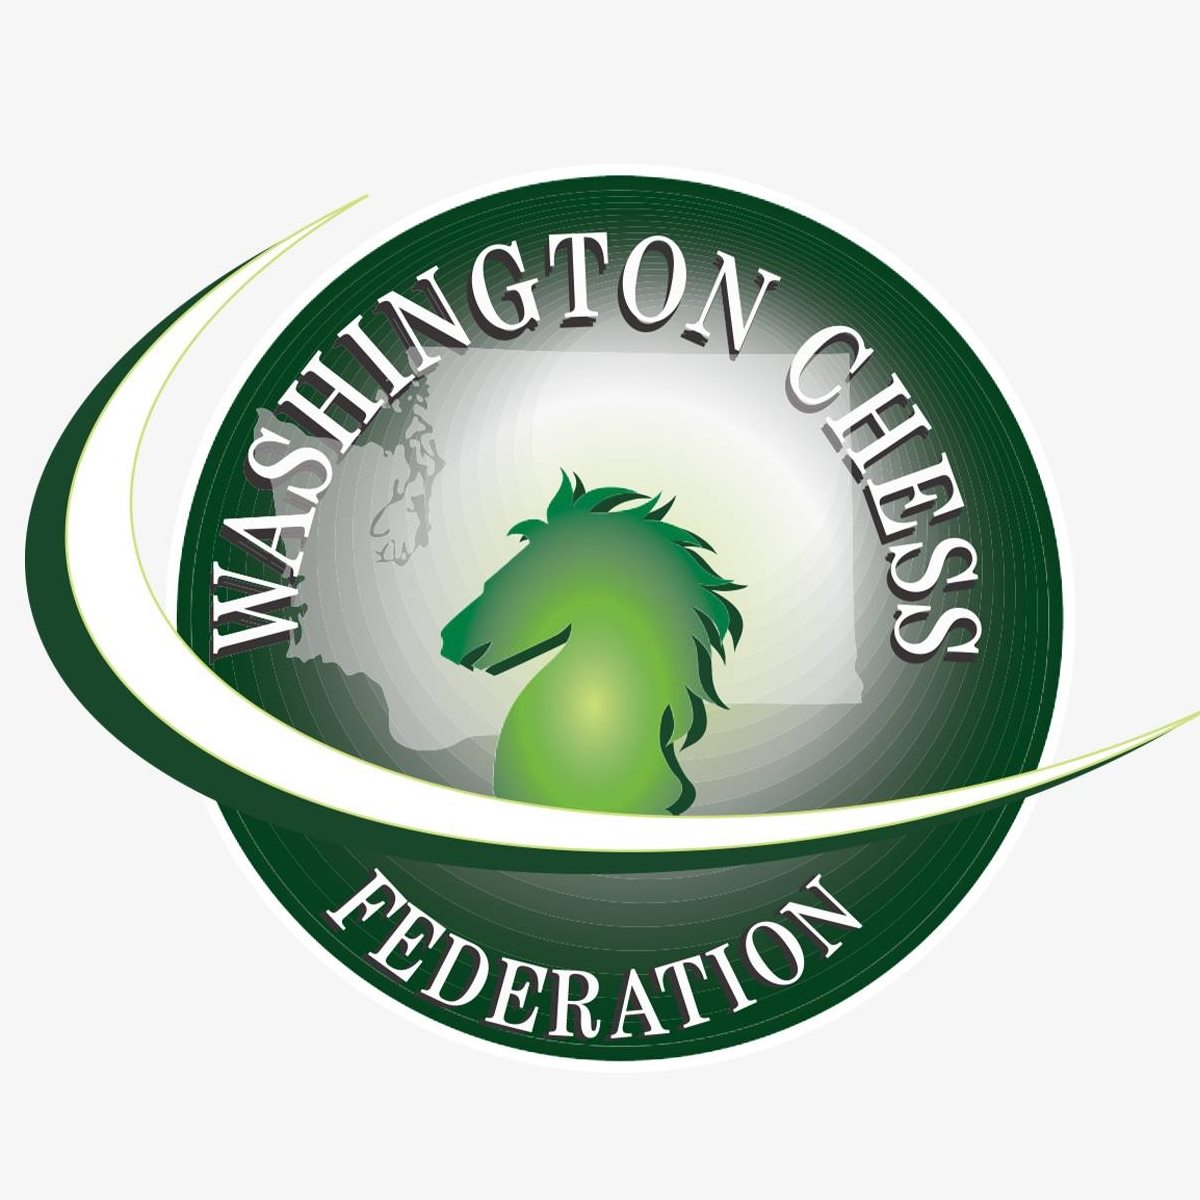 WA Chess Federation